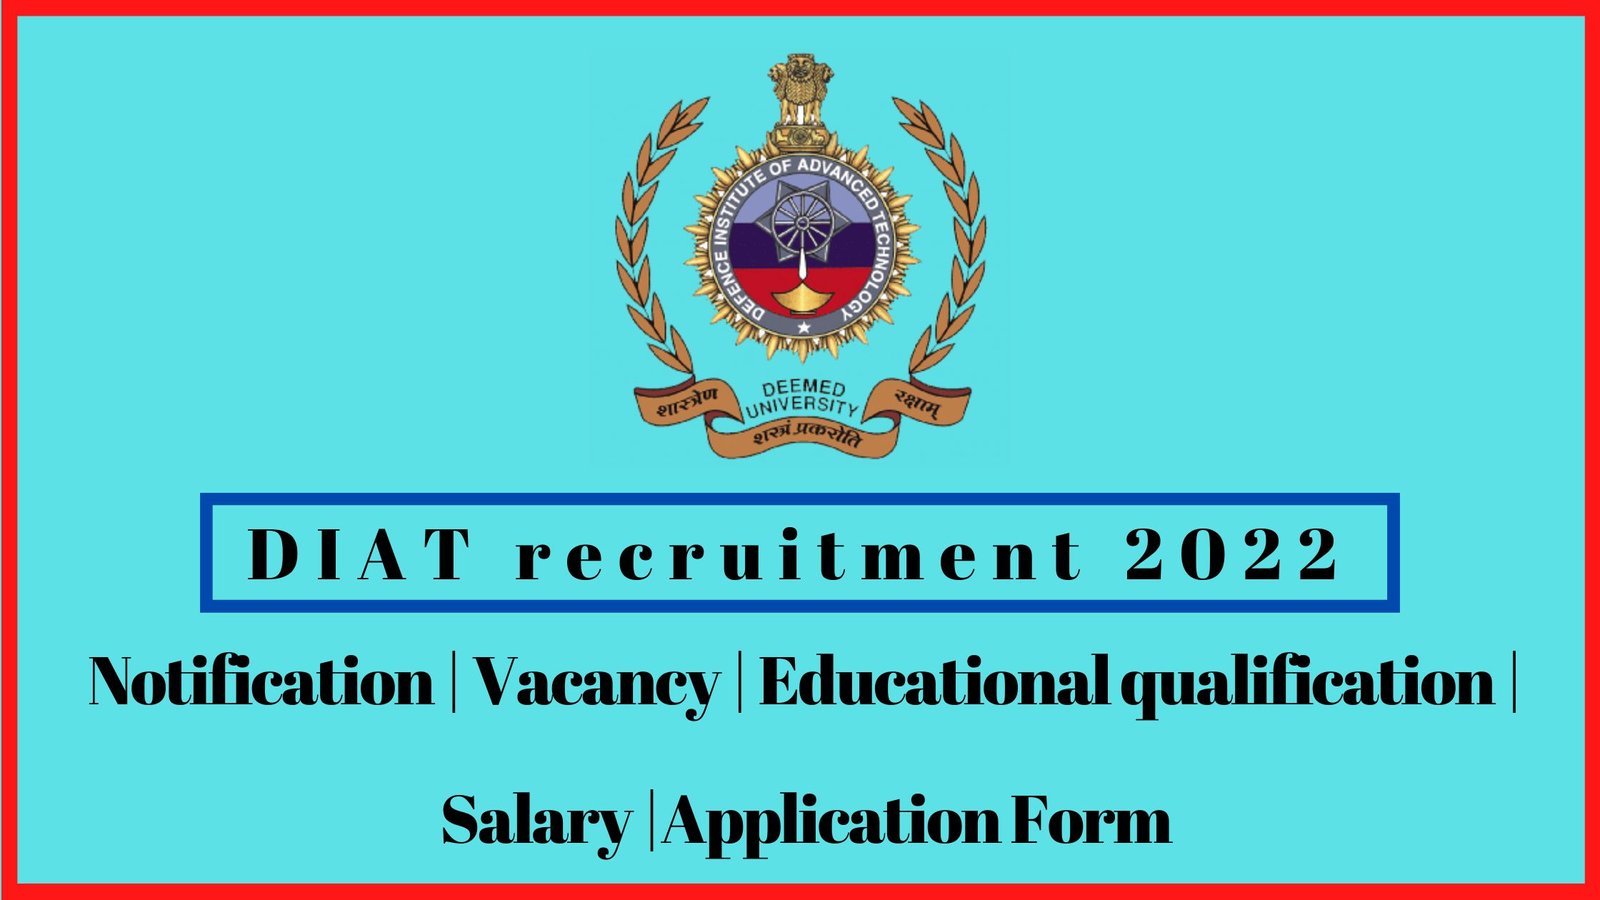 DIAT recruitment 2022 in tamil